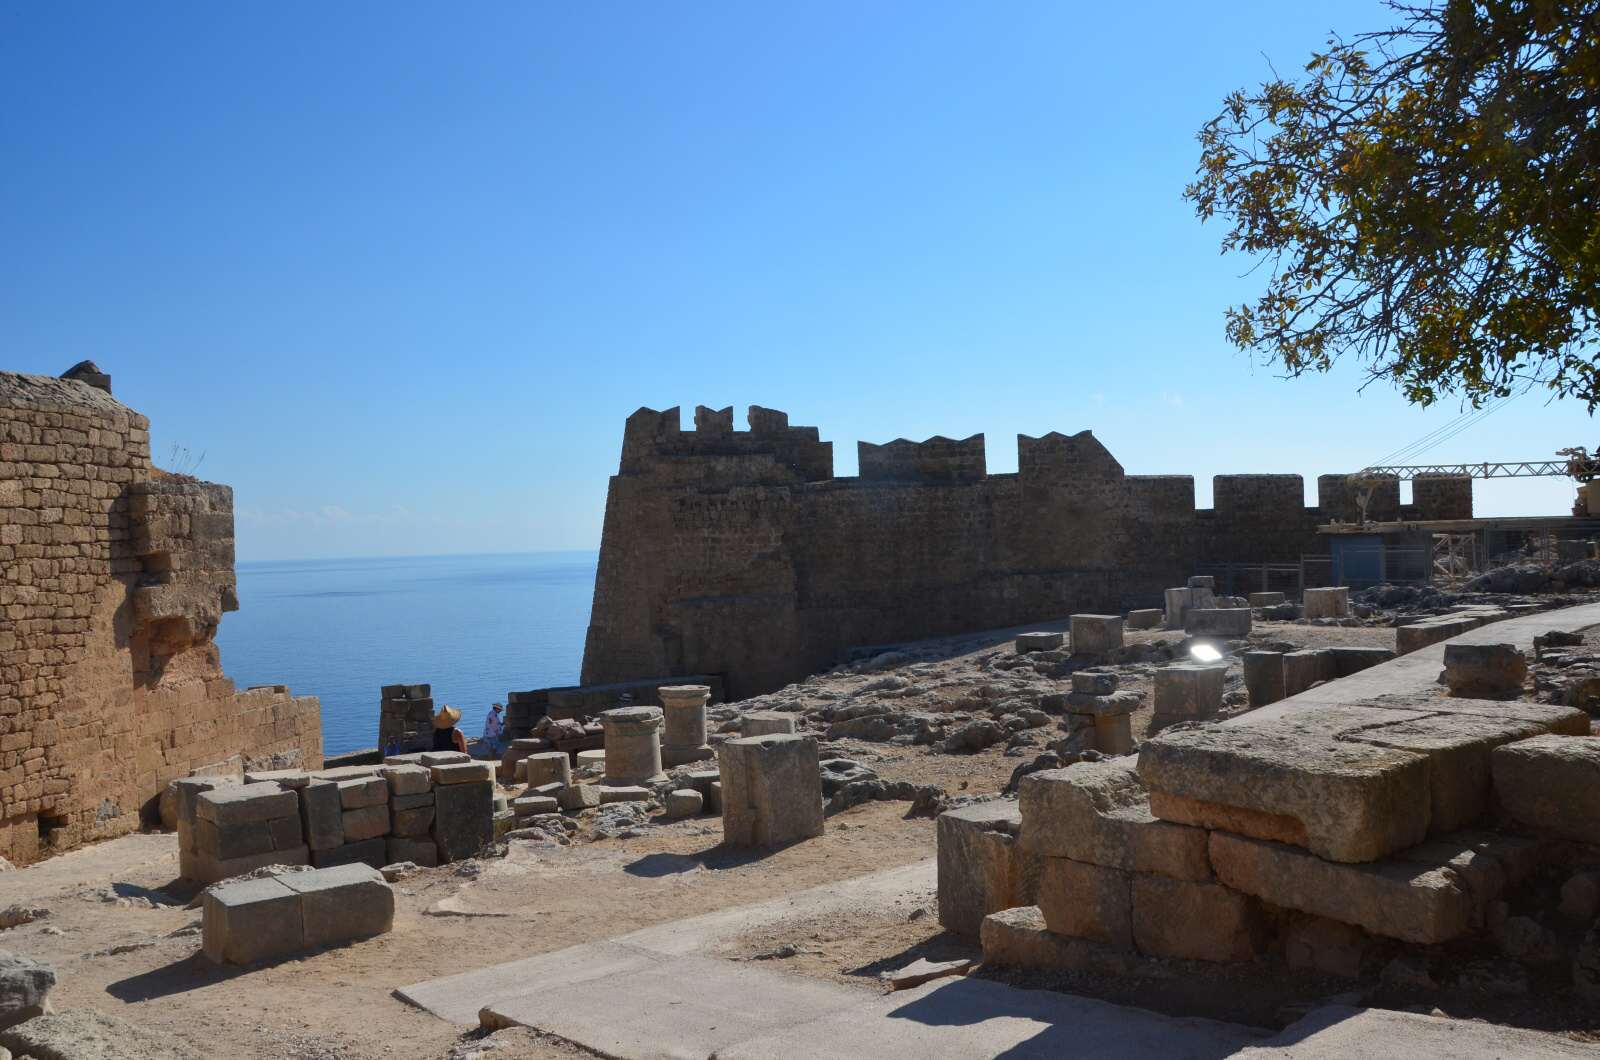 Foto 6: Zbytky starověké akropole a středověké johanitské pevnosti, Lindos, Řecko, Rhodos